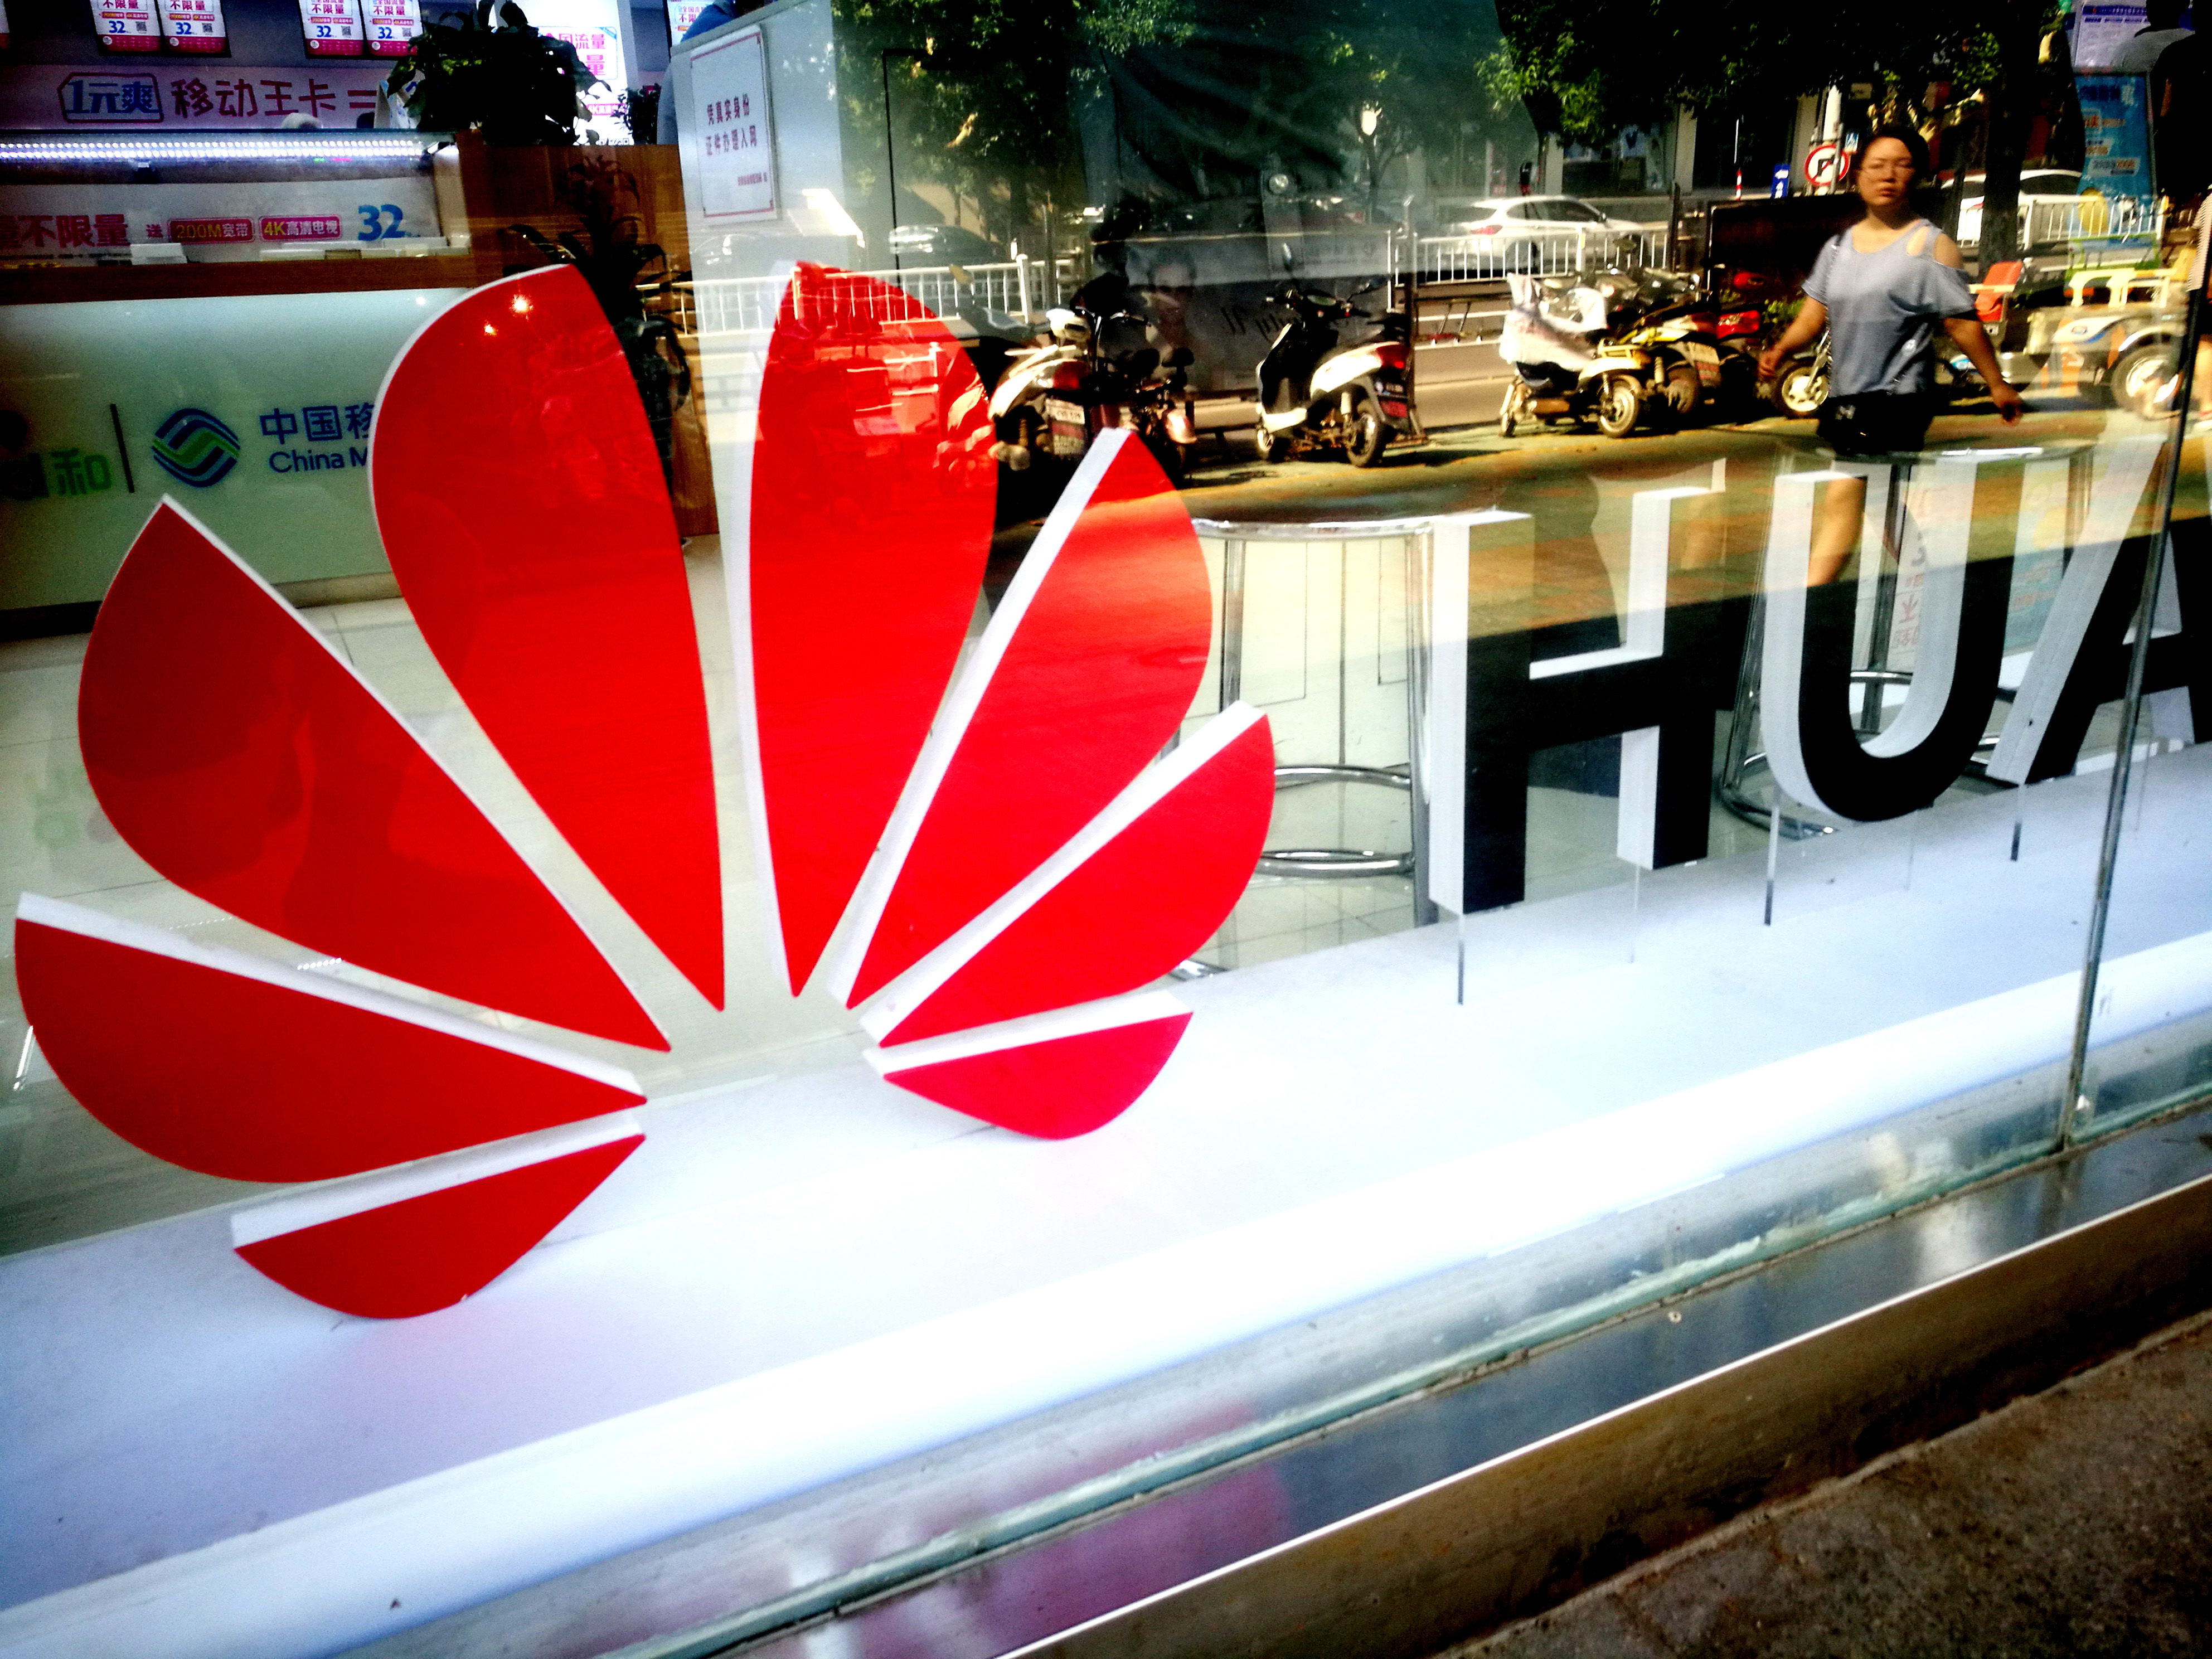 Az amerikaiak megszakíthatják a hírszerzési együttműködést a Huaweivel szerződő országokkal